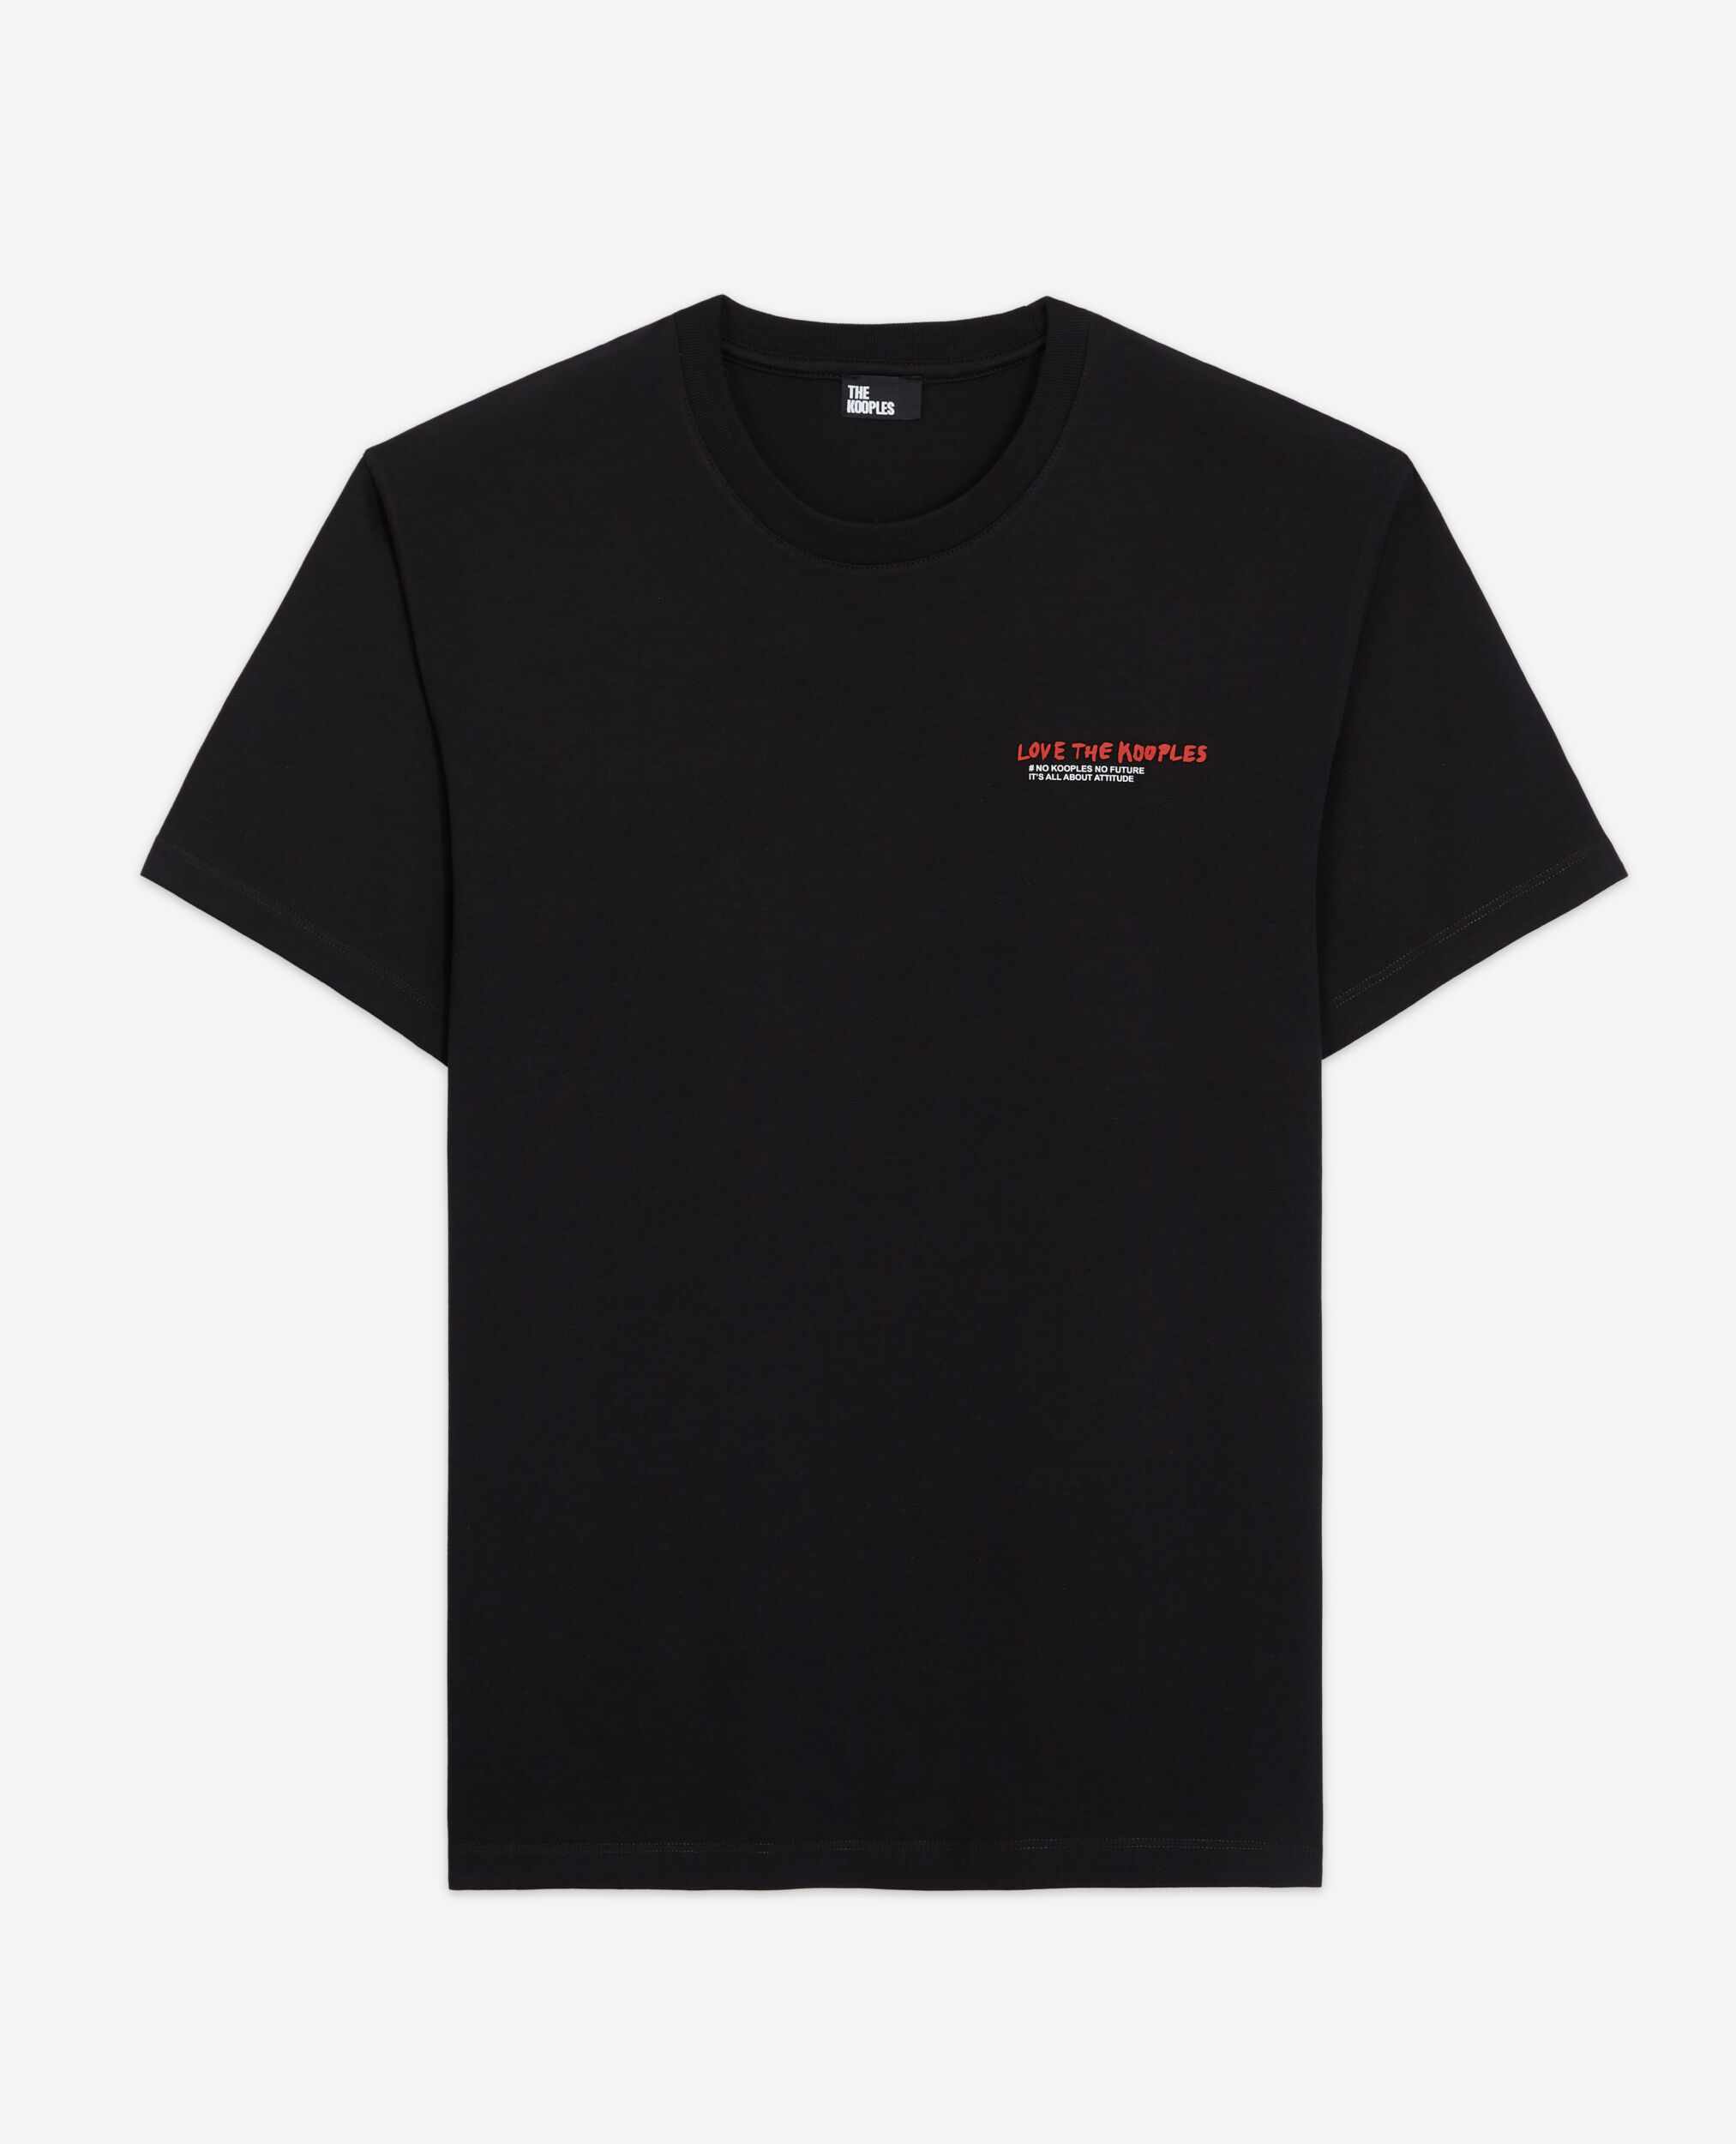 I Love Kooples black T-shirt, BLACK, hi-res image number null